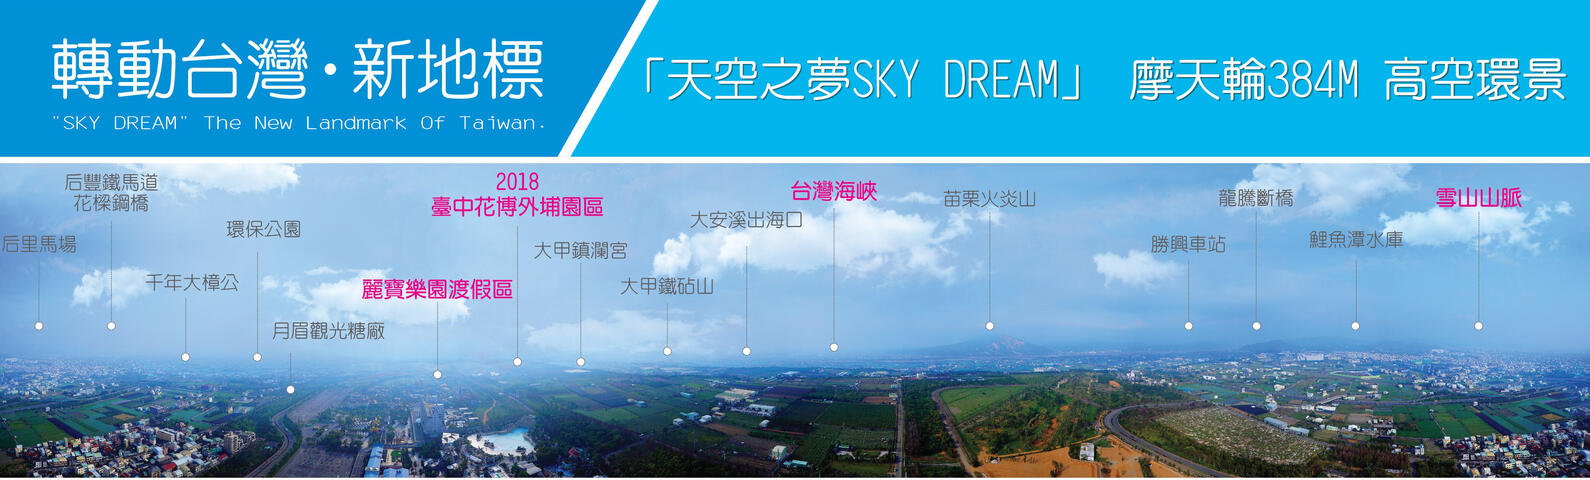 天空之梦Sky  Dream